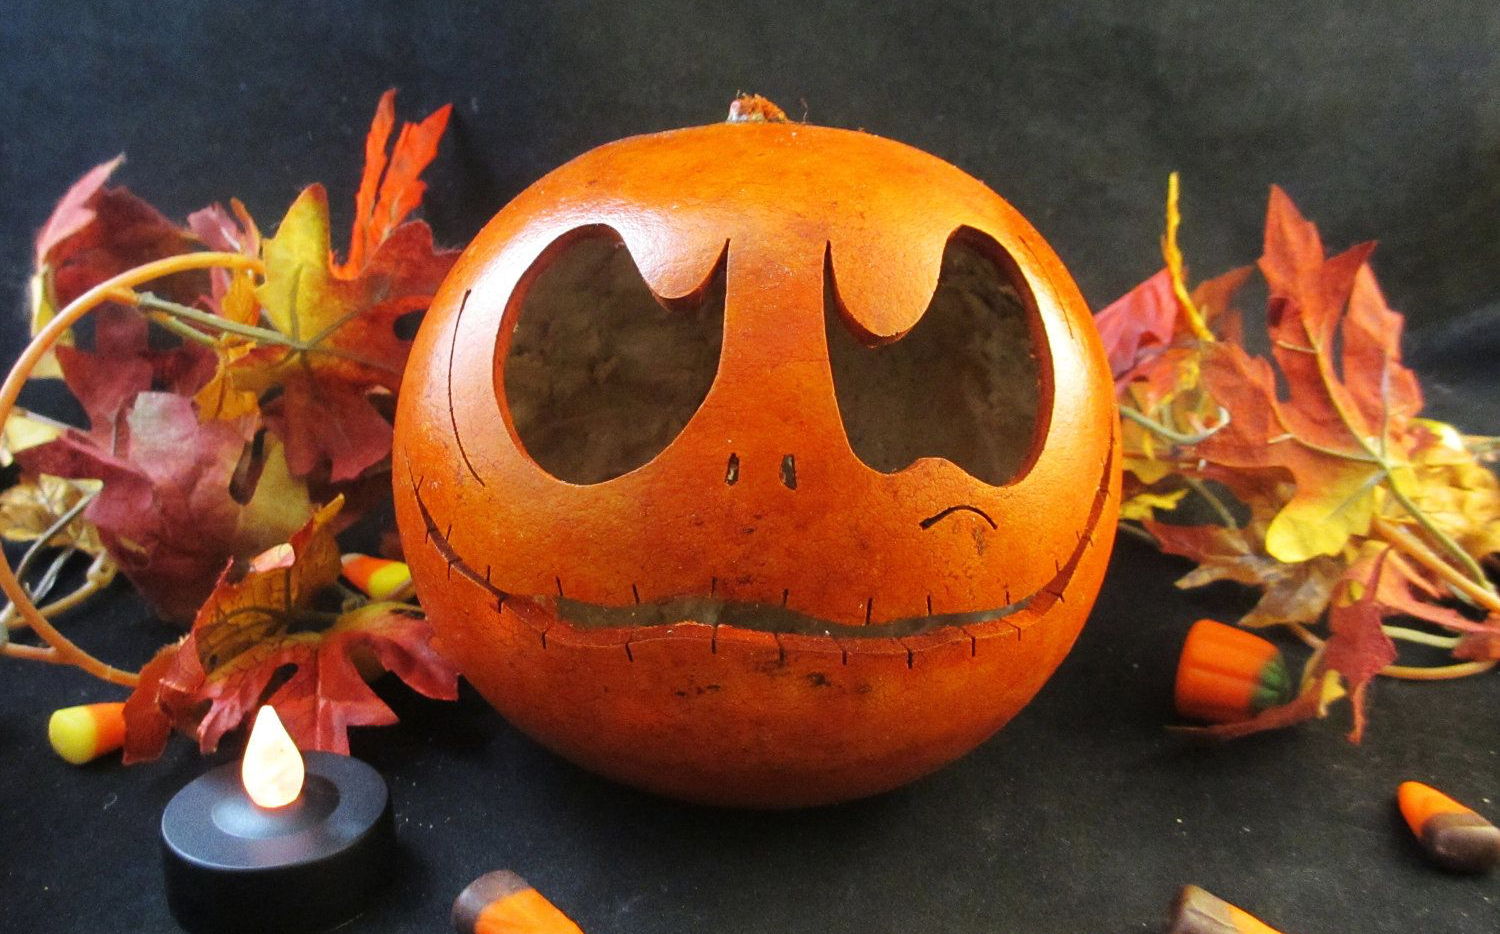 Cute pumpkin carving ideas